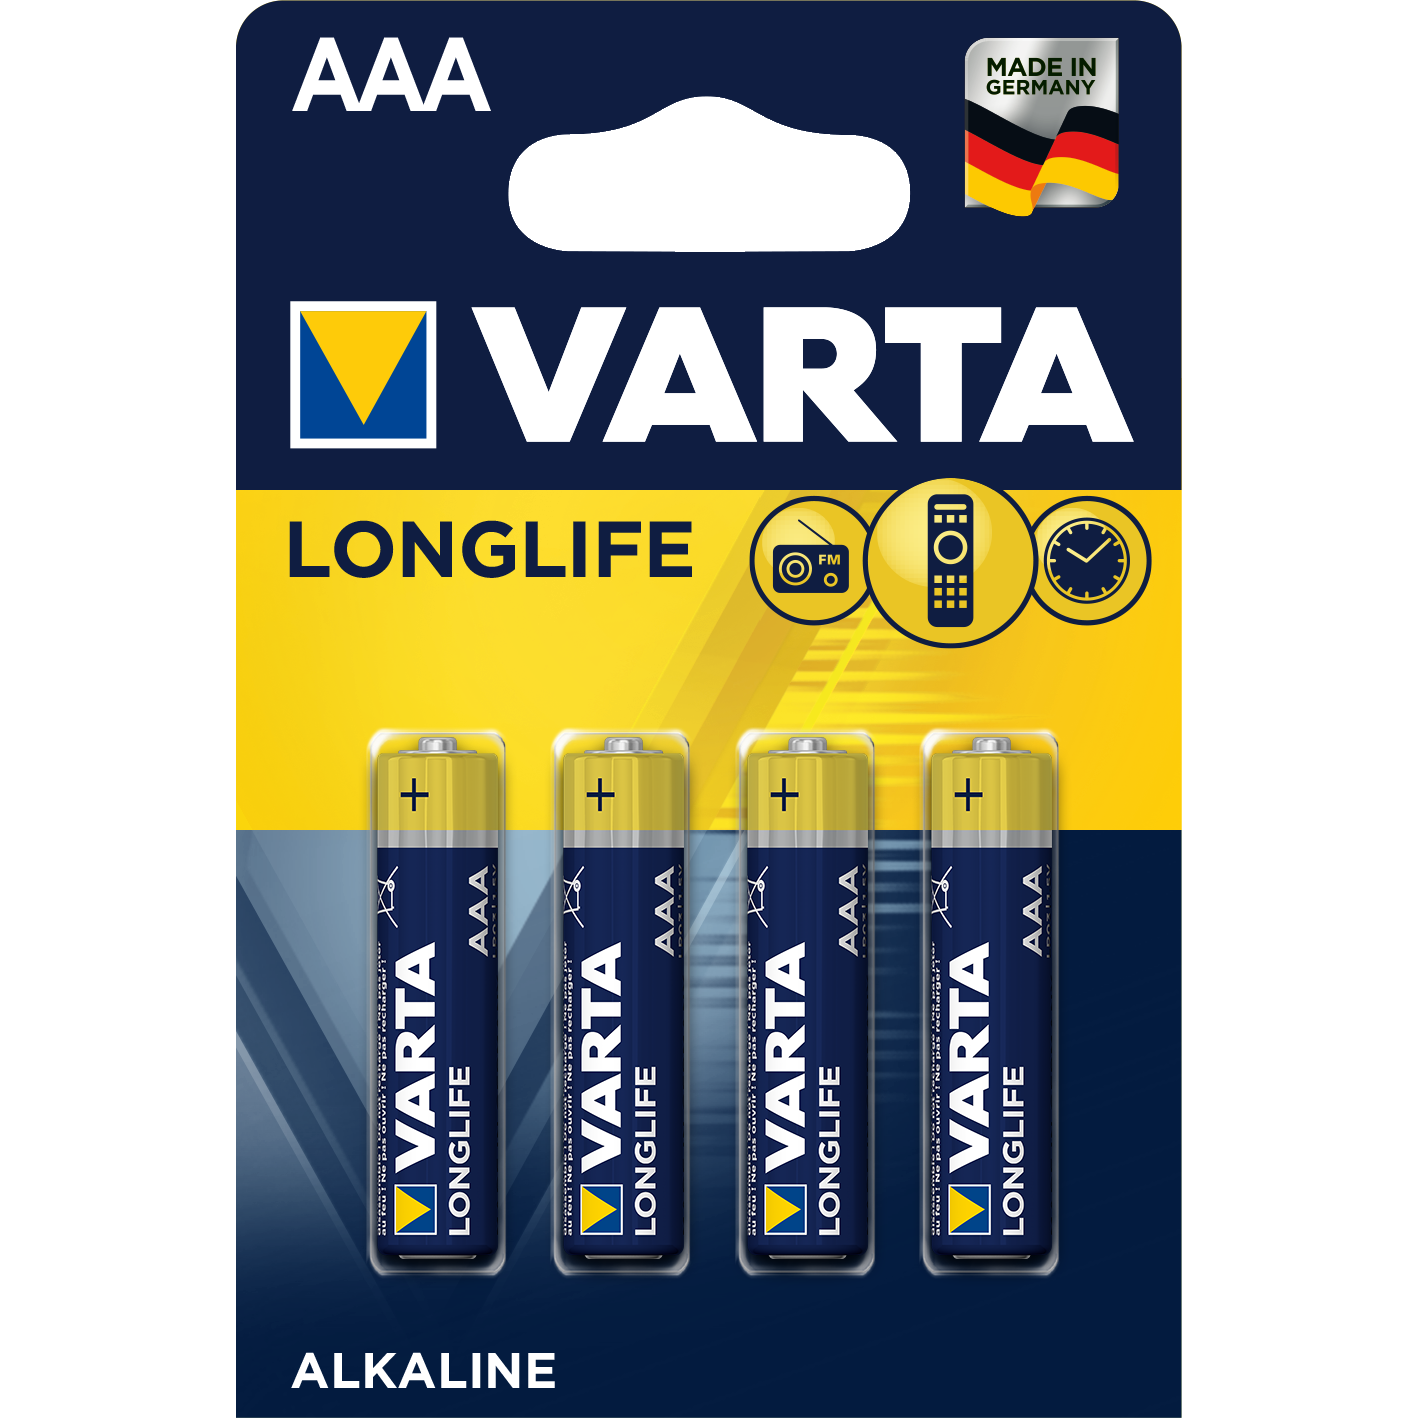 varta-longlife-batteries-aaa-bulk-value-pack-40pcs